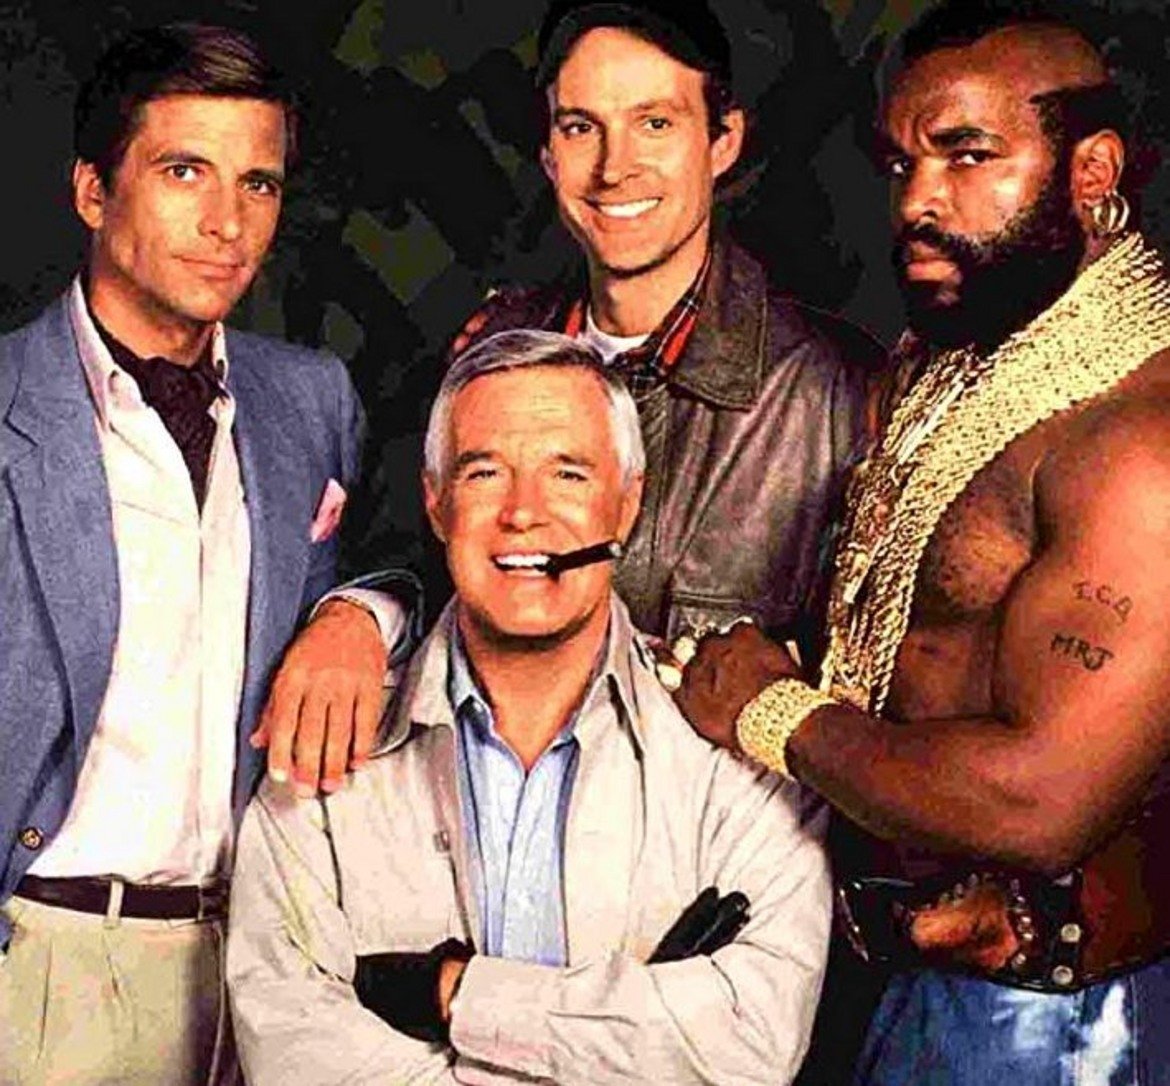 The A-Team

Четирима бивши членове на специален отряд към американската армия са осъдени от военен съд за престъпление, което "не са извършили". Те бягат от затвора и започват да работят като наемници, опитвайки се да изчистят името си. Напълно достатъчна основа за осемдесетарски екшън сериал, който в първите години след дебюта си (от 1982-а нататък) става много популярен, но с времето рейтингите падат и в крайна сметка на приключенията на героите е сложен край.